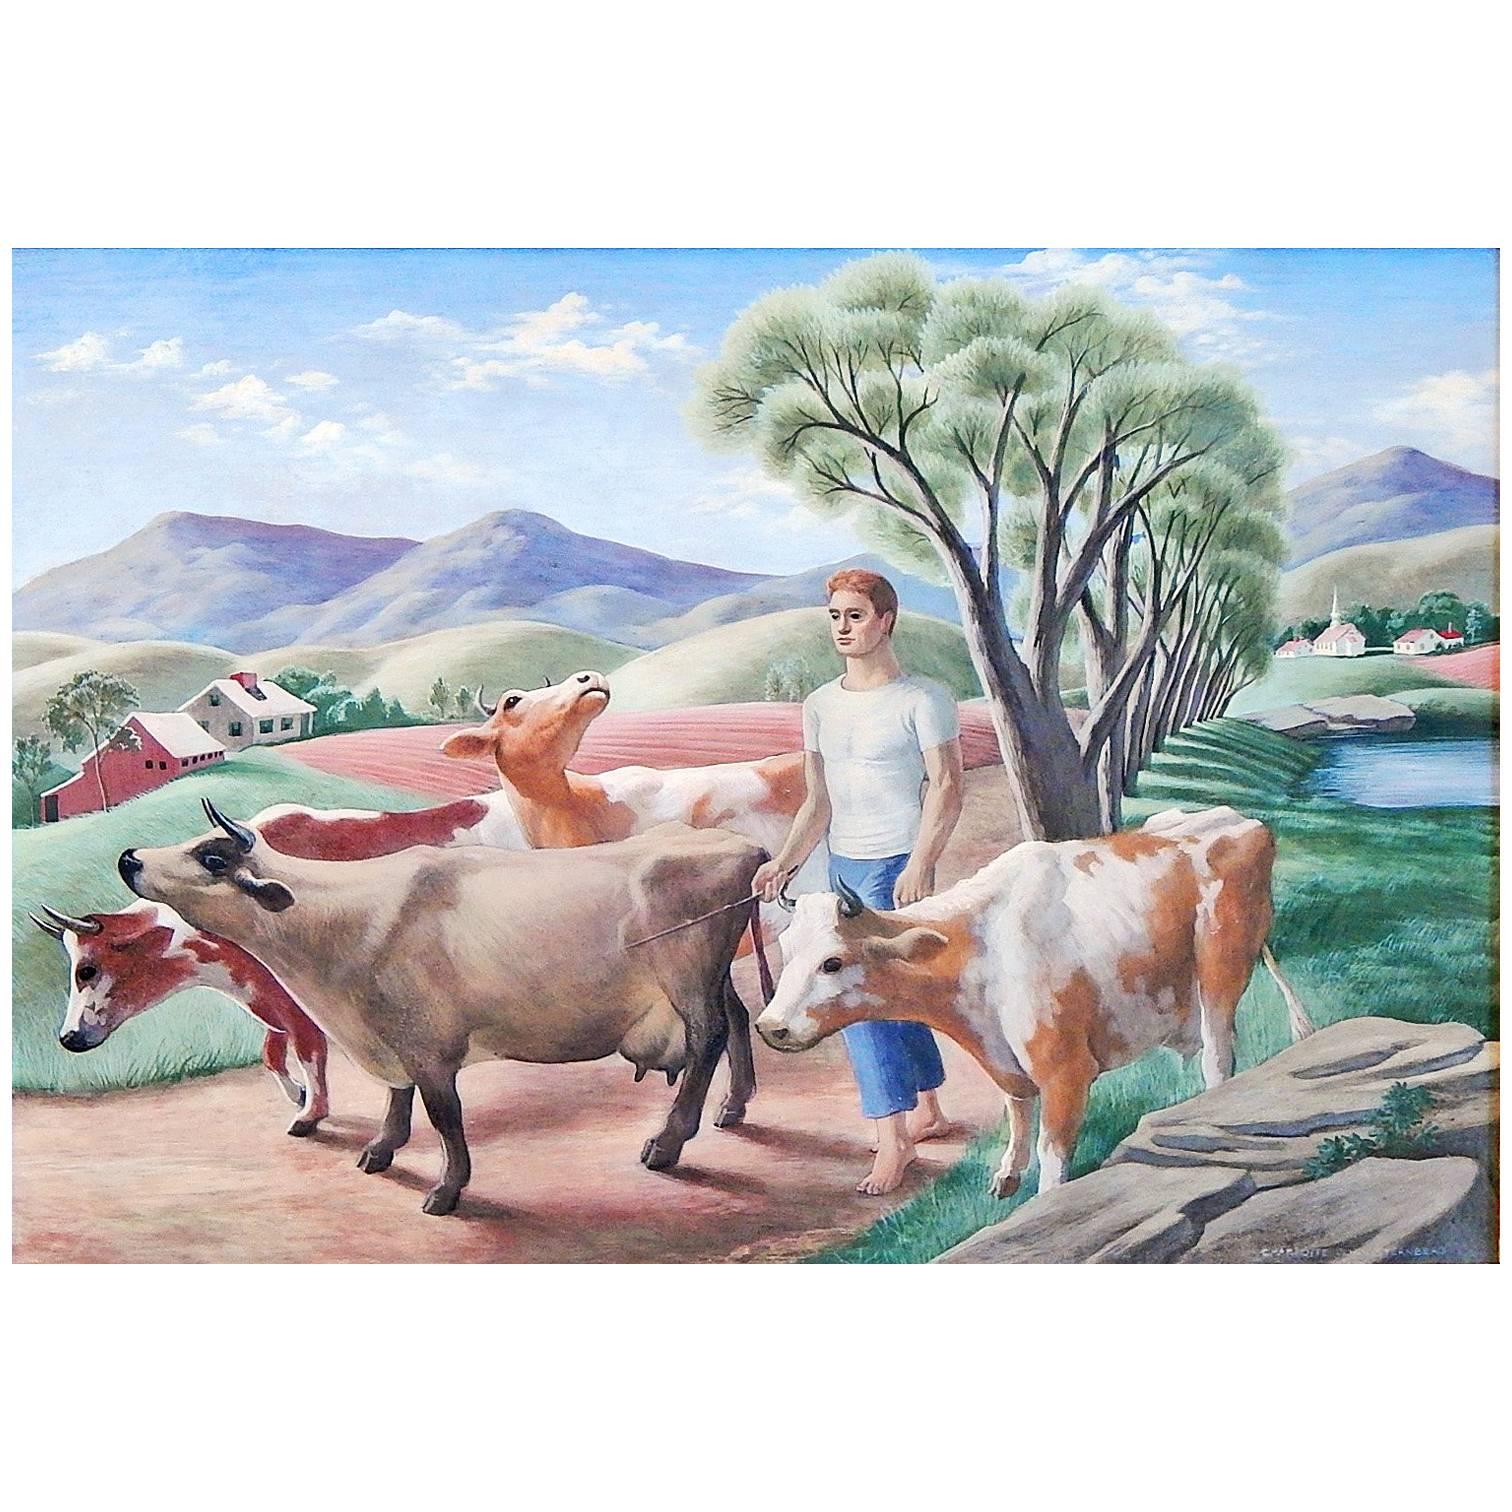 "Walking the Cows" - Importante peinture réaliste sociale de Sternberg, 1944